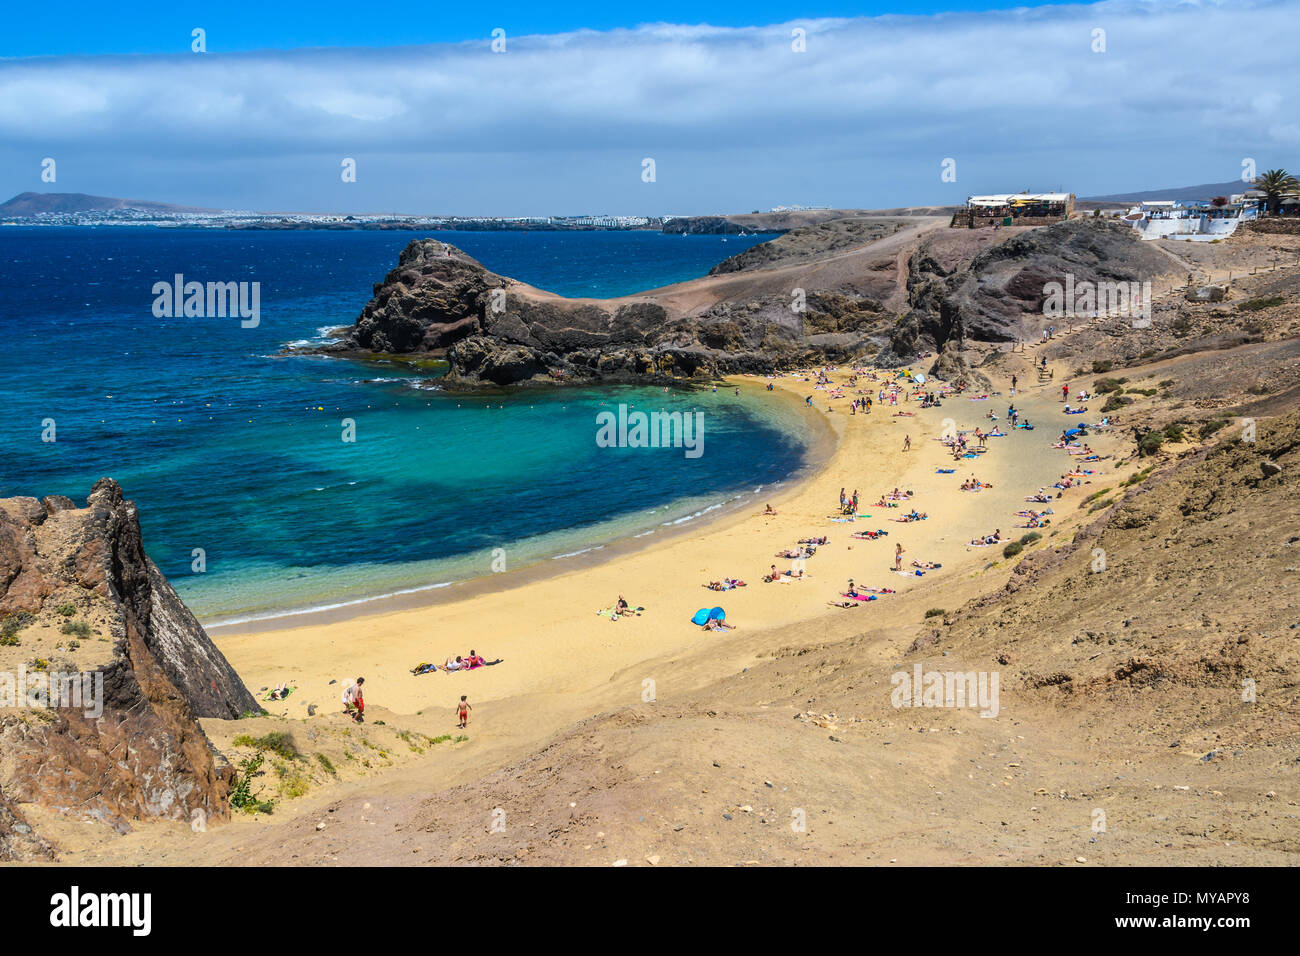 Playa del Papagayo in Lanzarote, Canary Islands, Spain Stock Photo